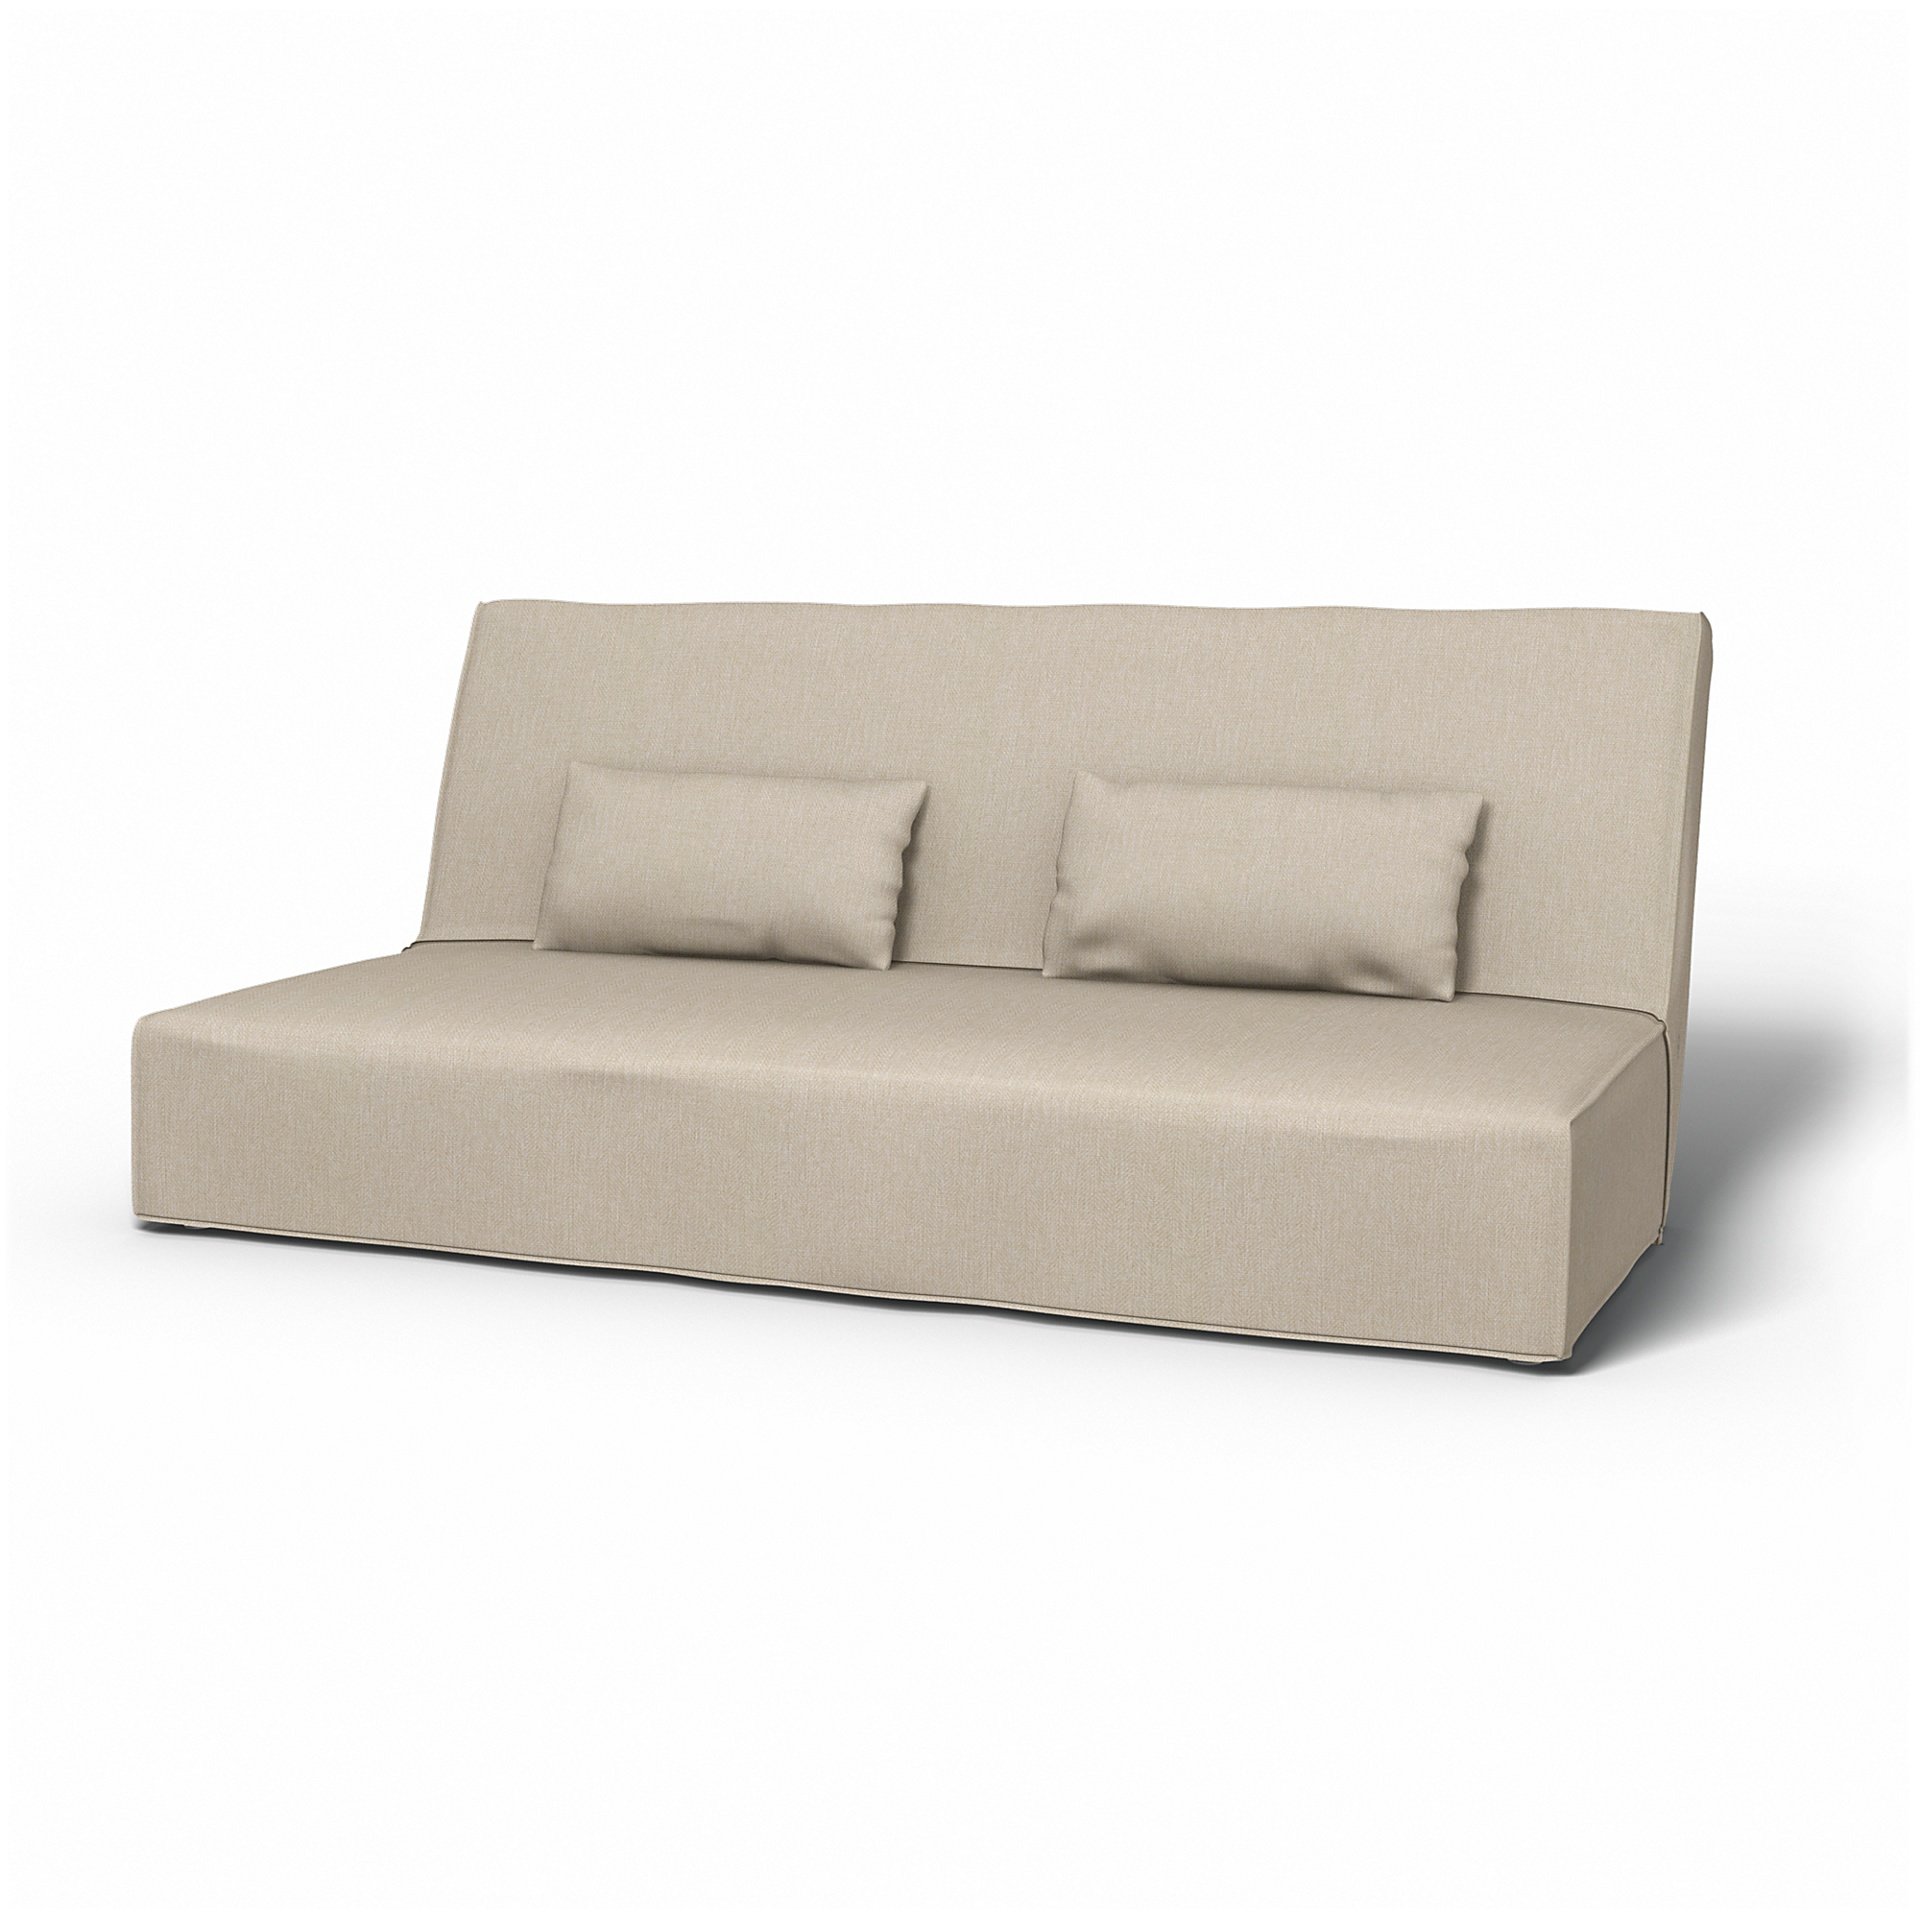 IKEA - Beddinge Sofa Bed Cover, Natural, - Bemz